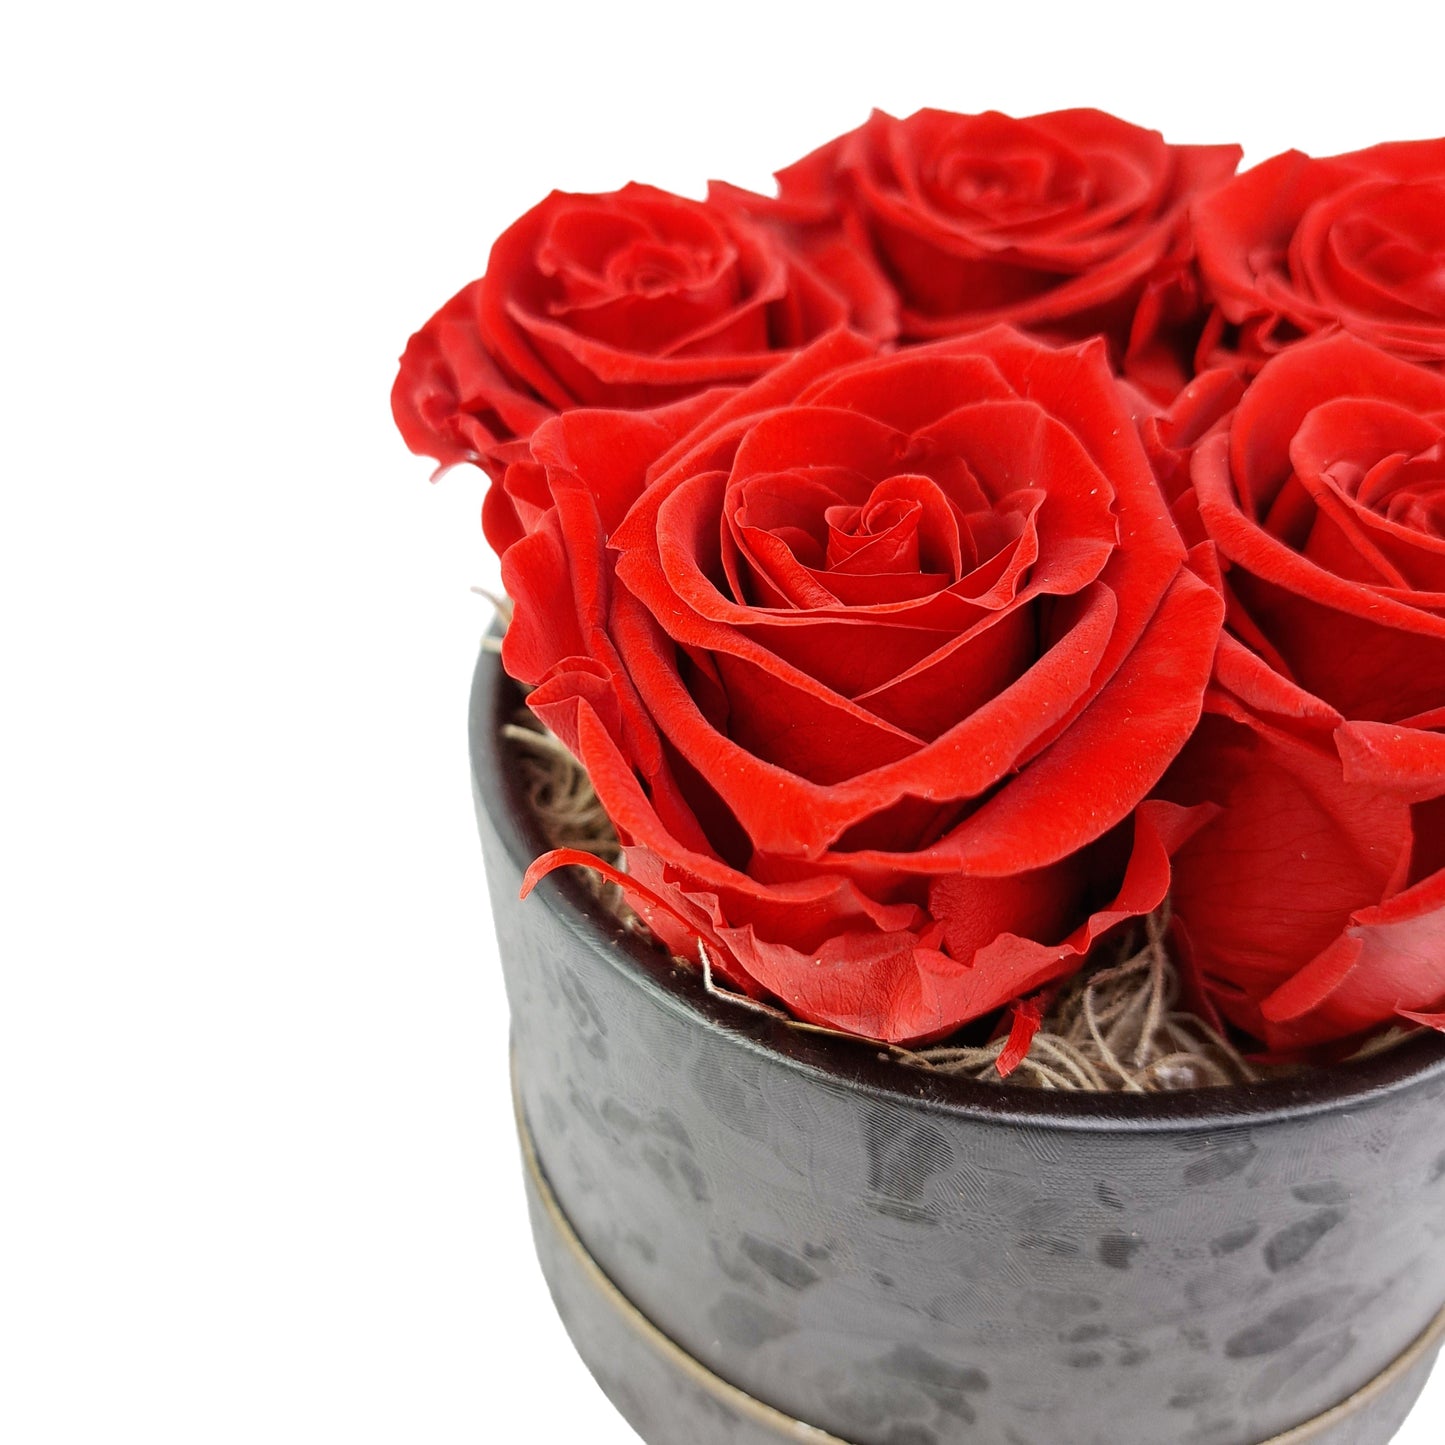 Flowerbox  stabilizovaných ruží - ETERNAL Flowers - Červená